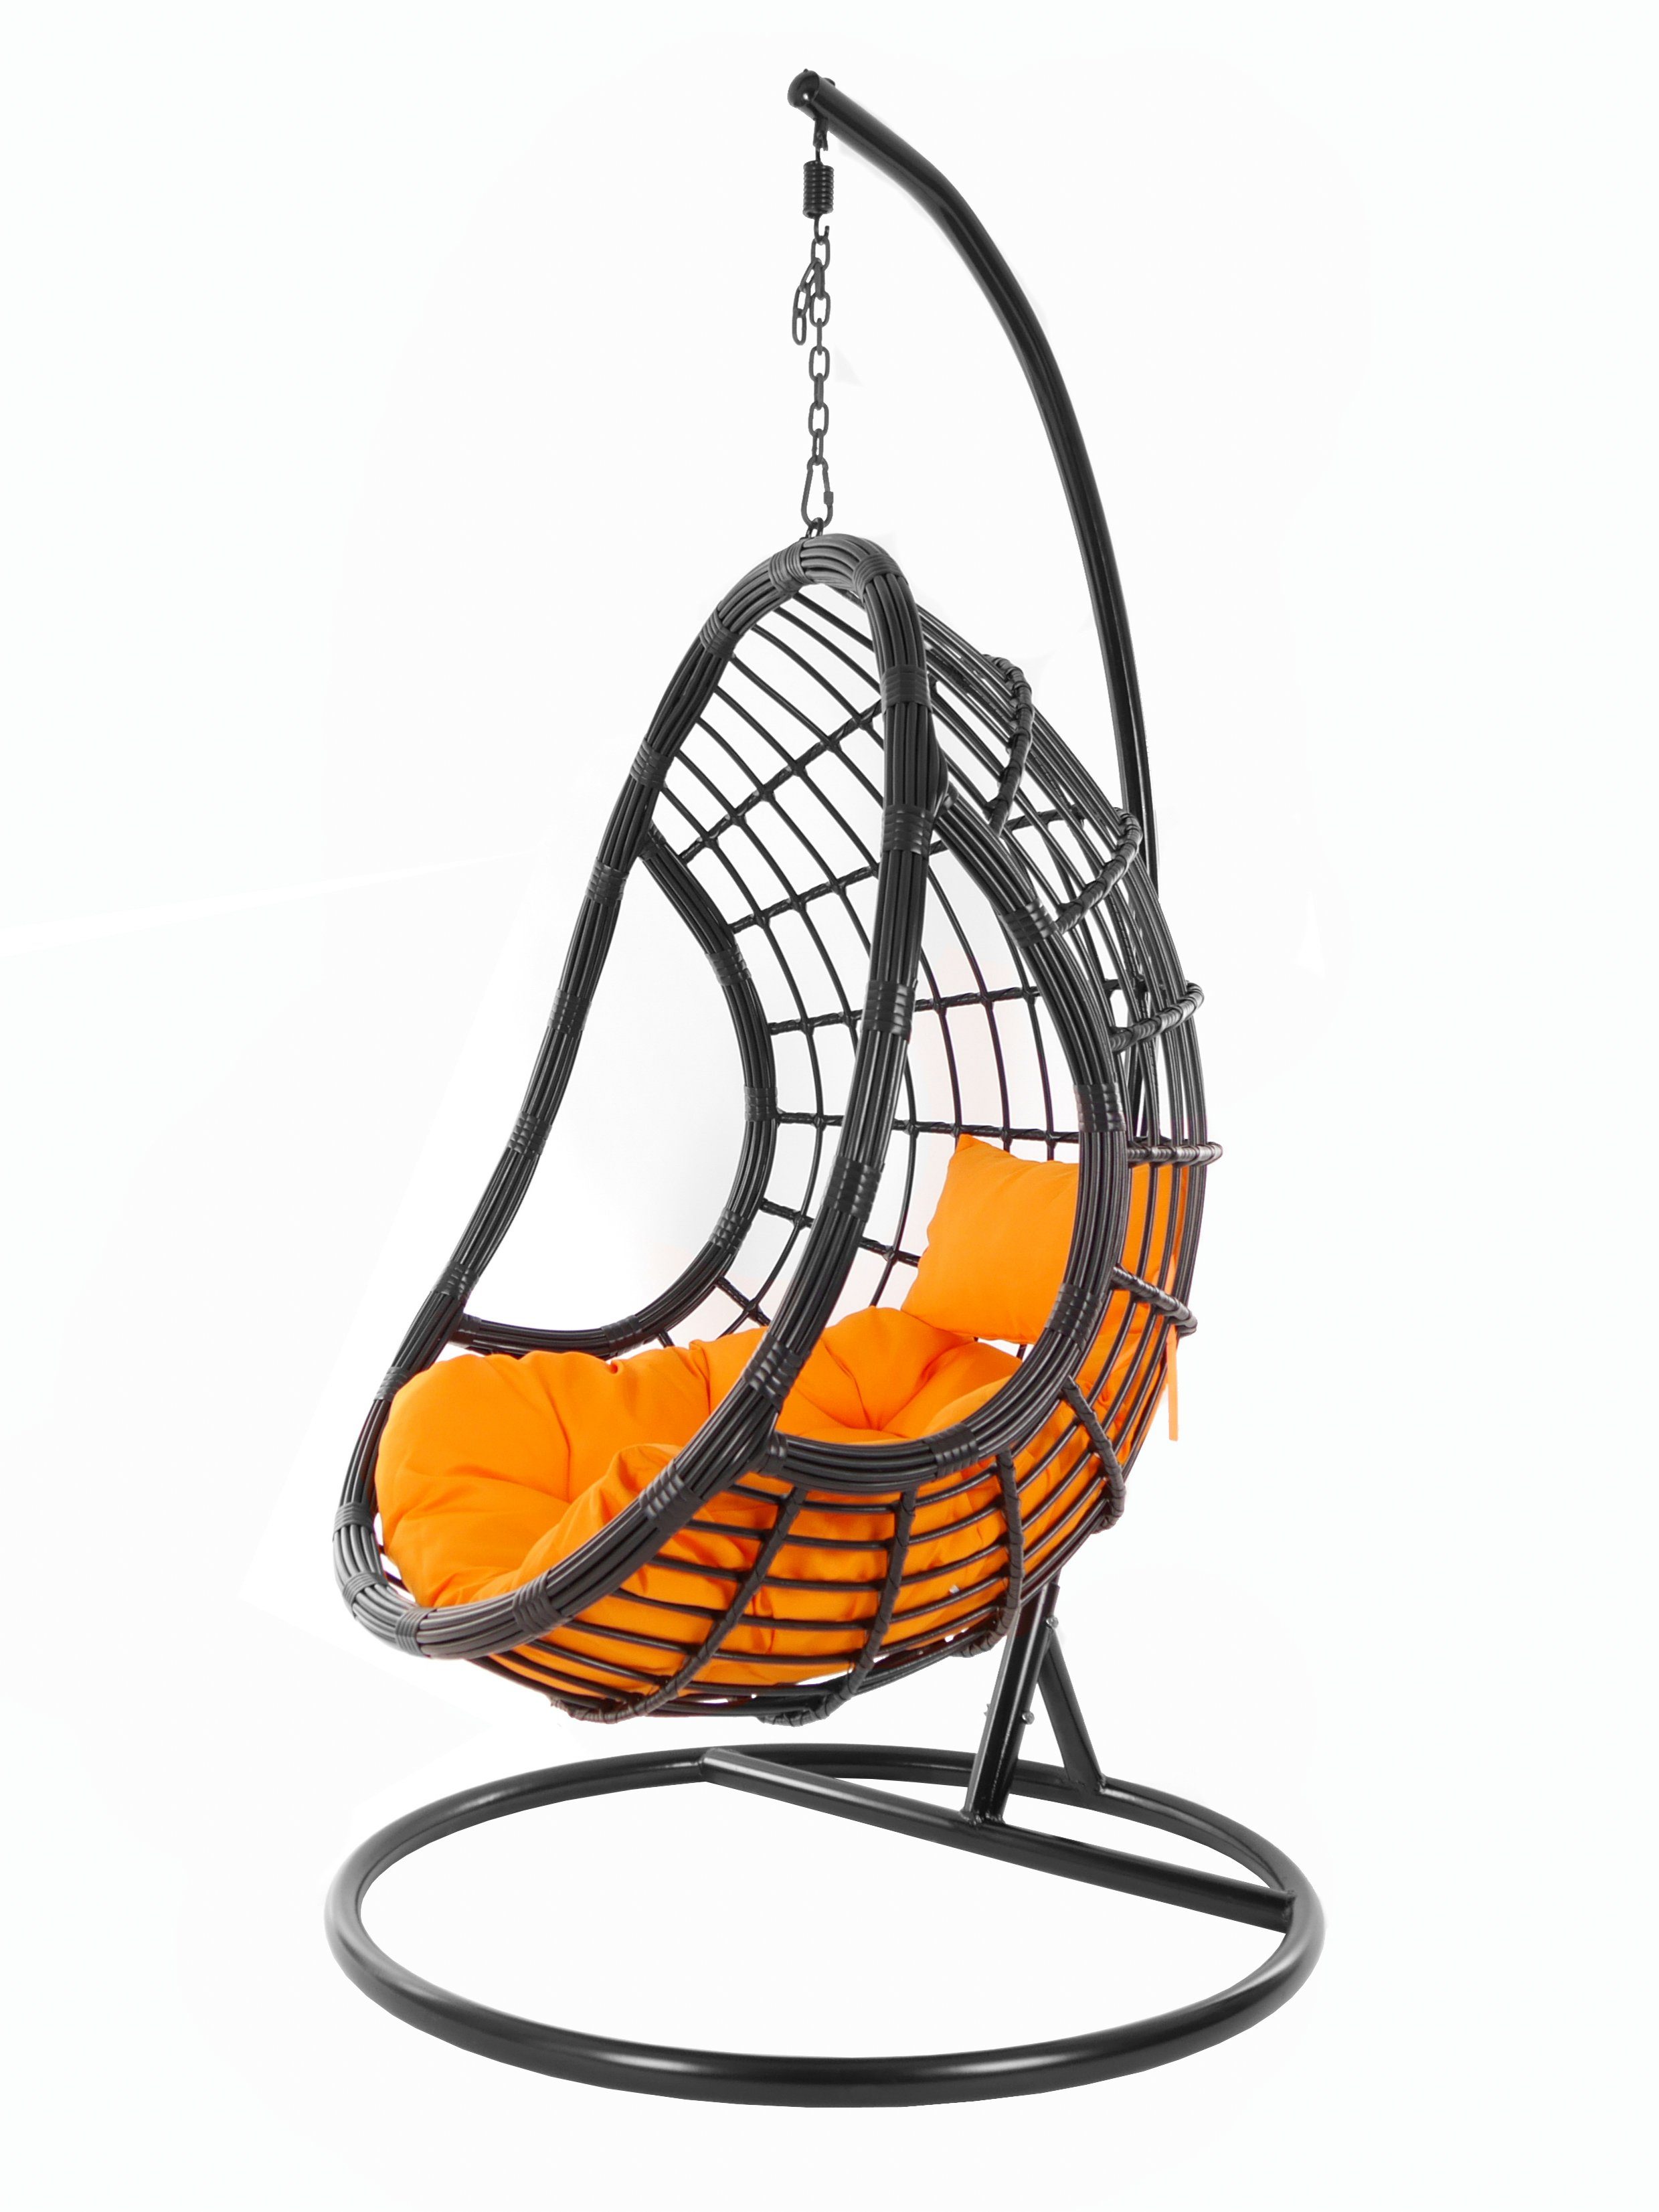 KIDEO Hängesessel PALMANOVA black, Swing Chair, schwarz, Loungemöbel, Hängesessel mit Gestell und Kissen, Schwebesessel, edles Design orange (3030 tangerine)